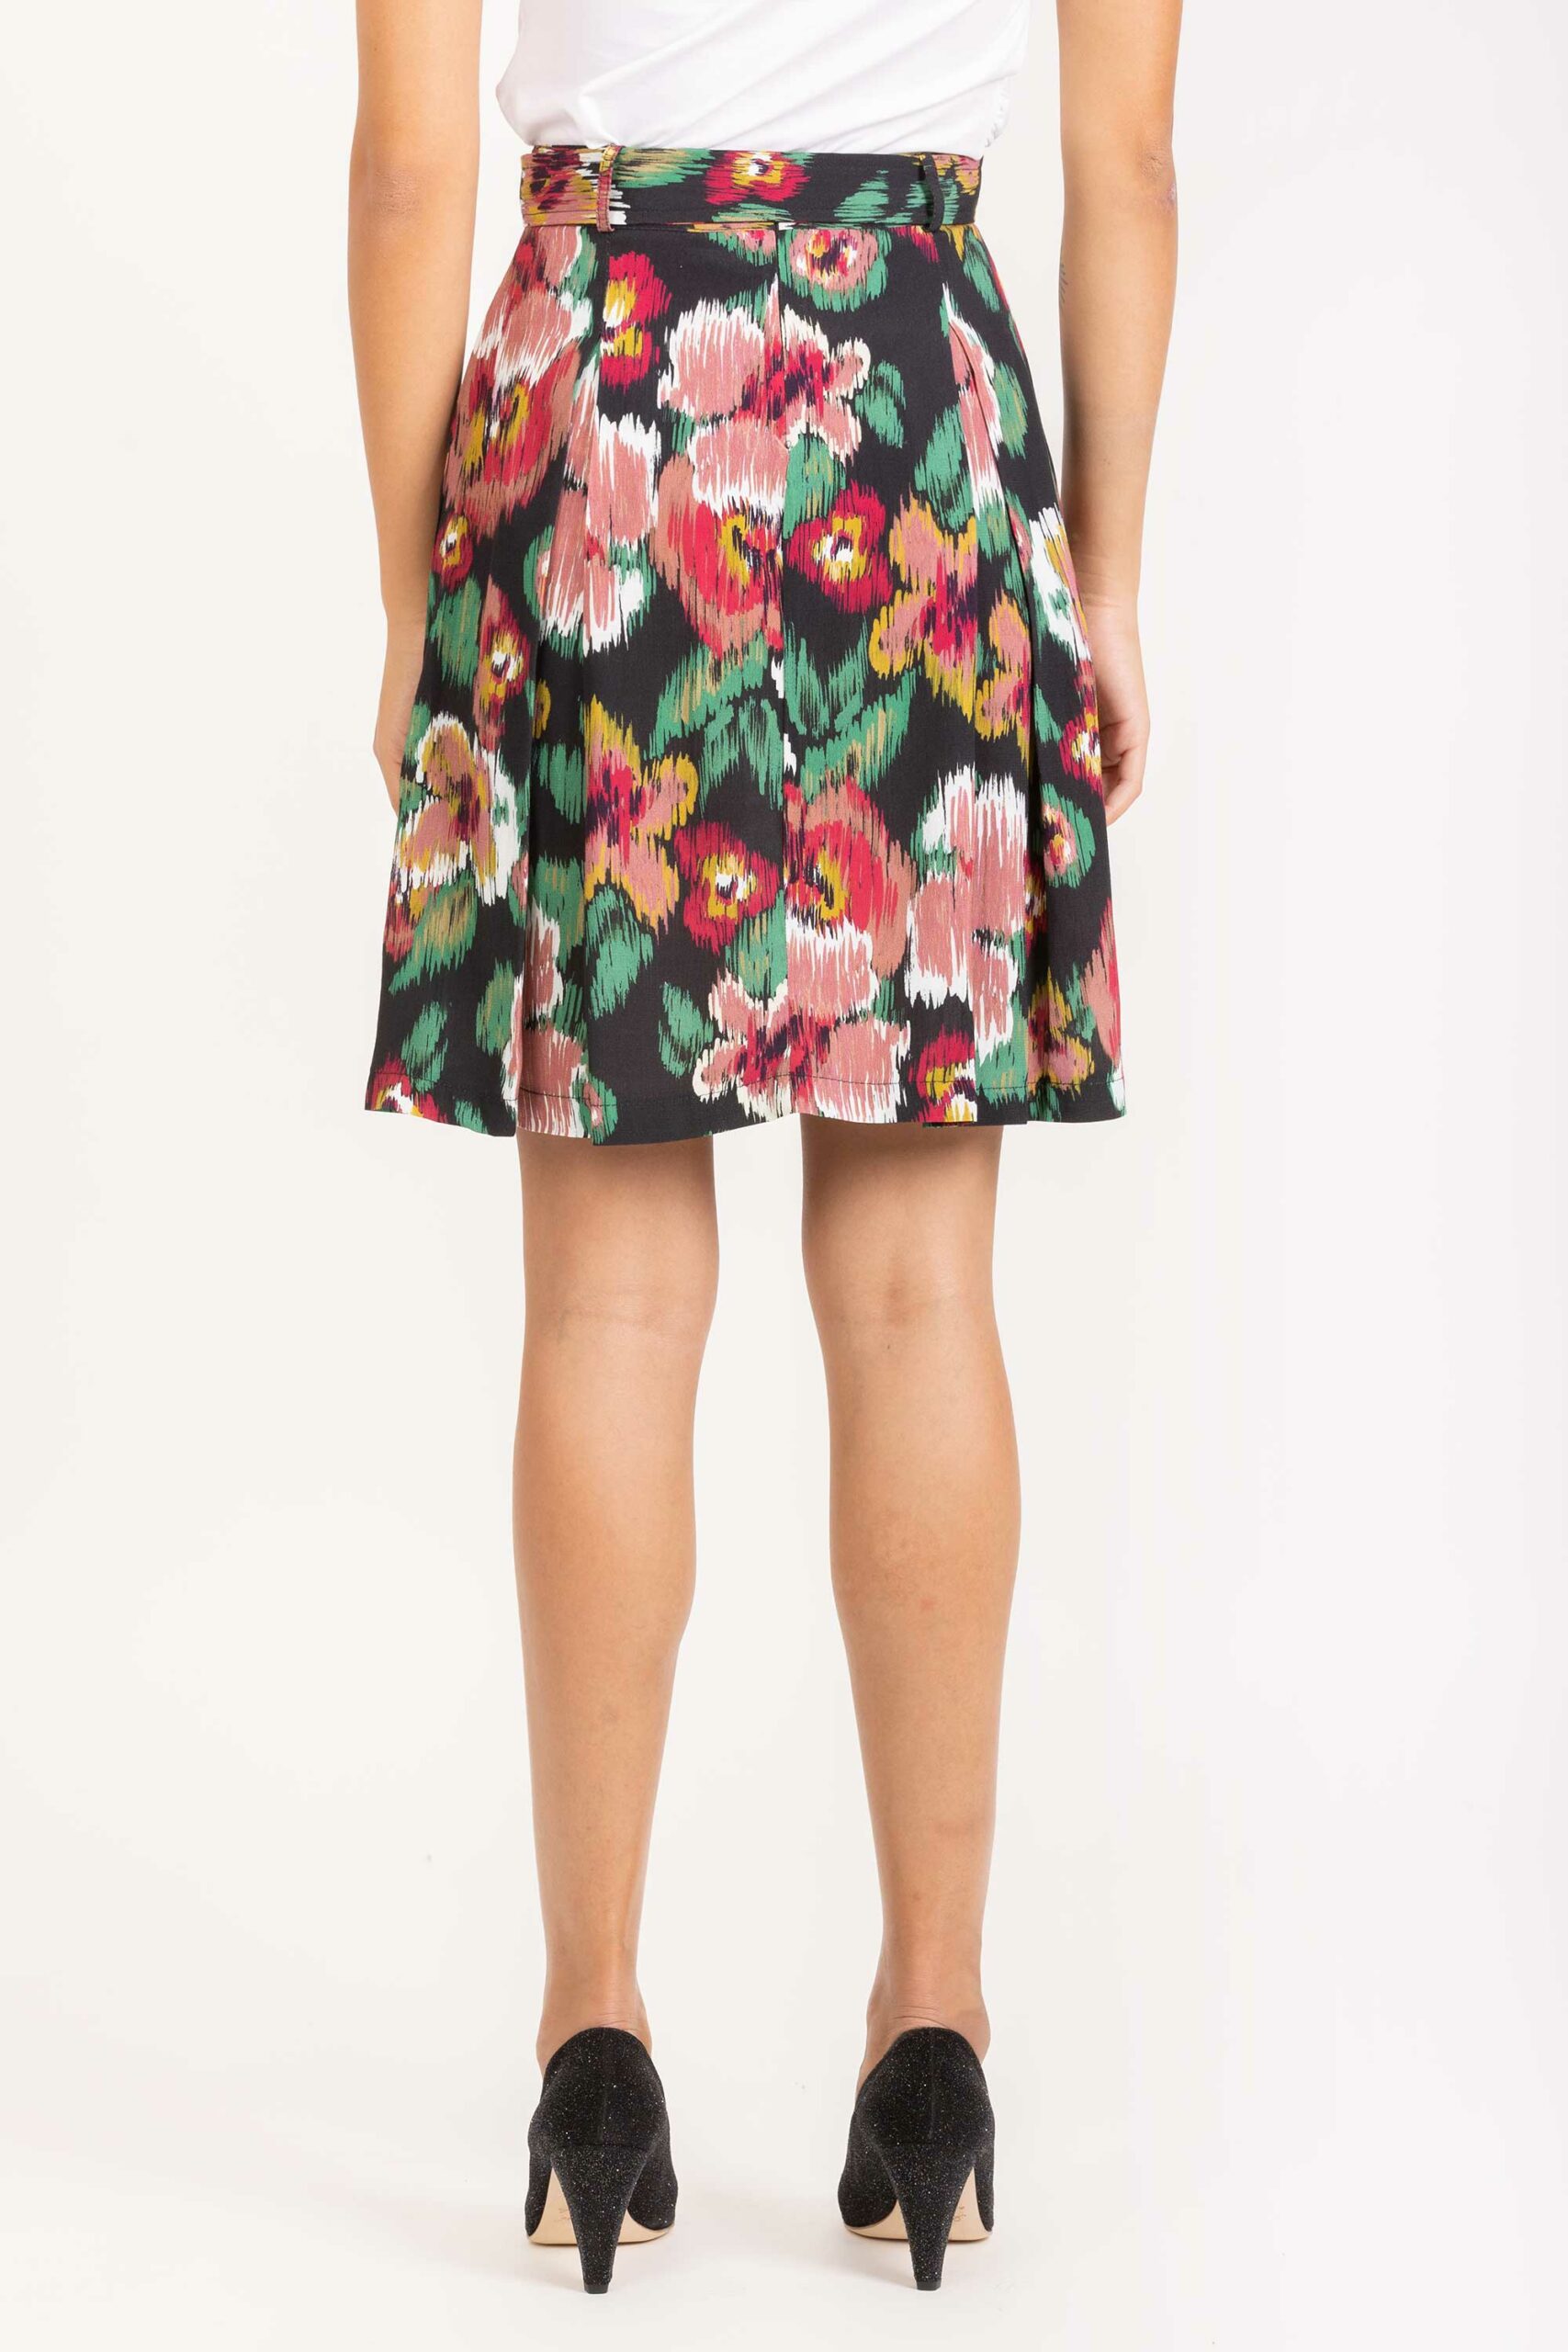 Jonquille Black Floral Skirt - Shop - Matchbox